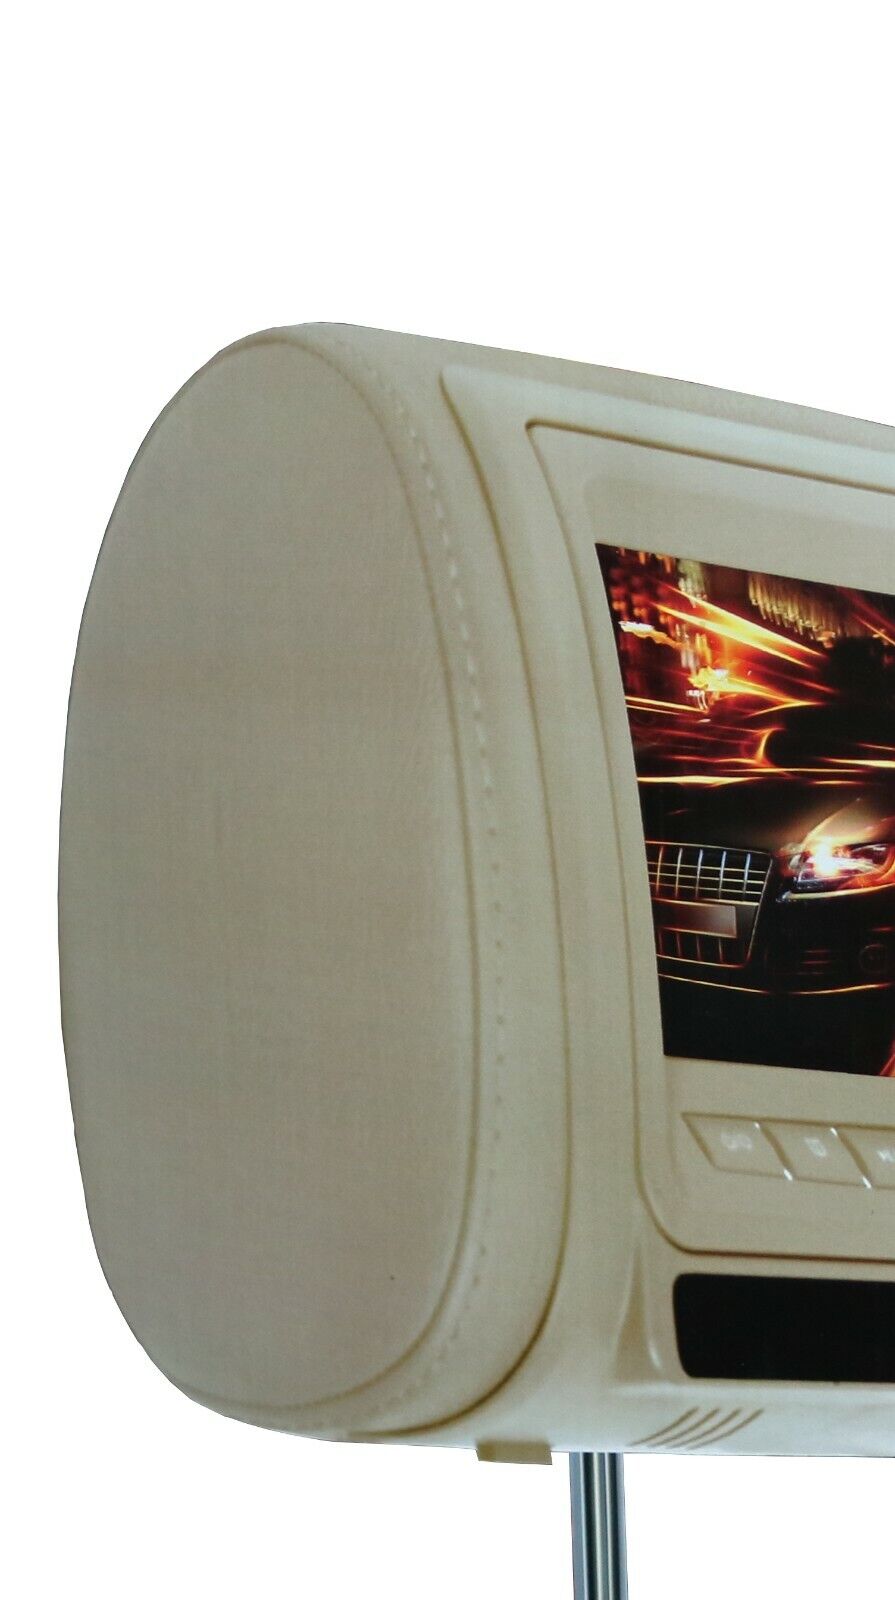 Audiotek AT-9PDV Headrest TFT LCD Monitor w/DVD USB IR FM TV SD 